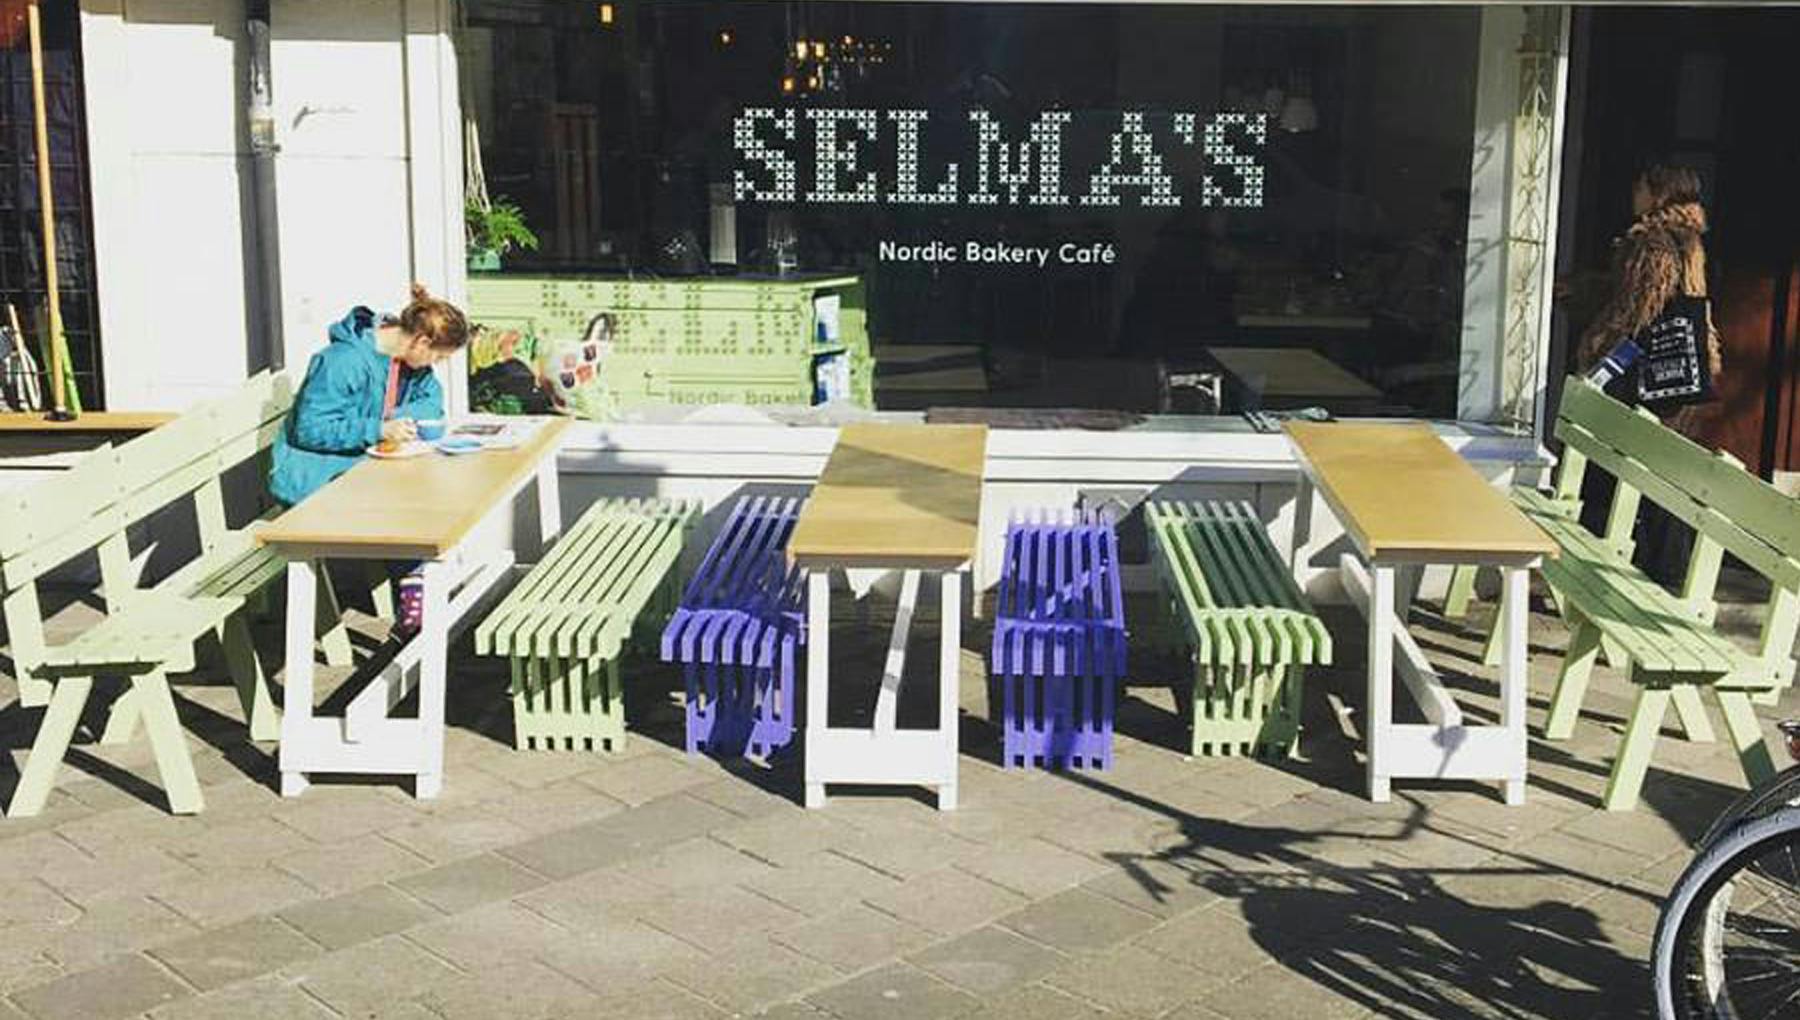 Selma's